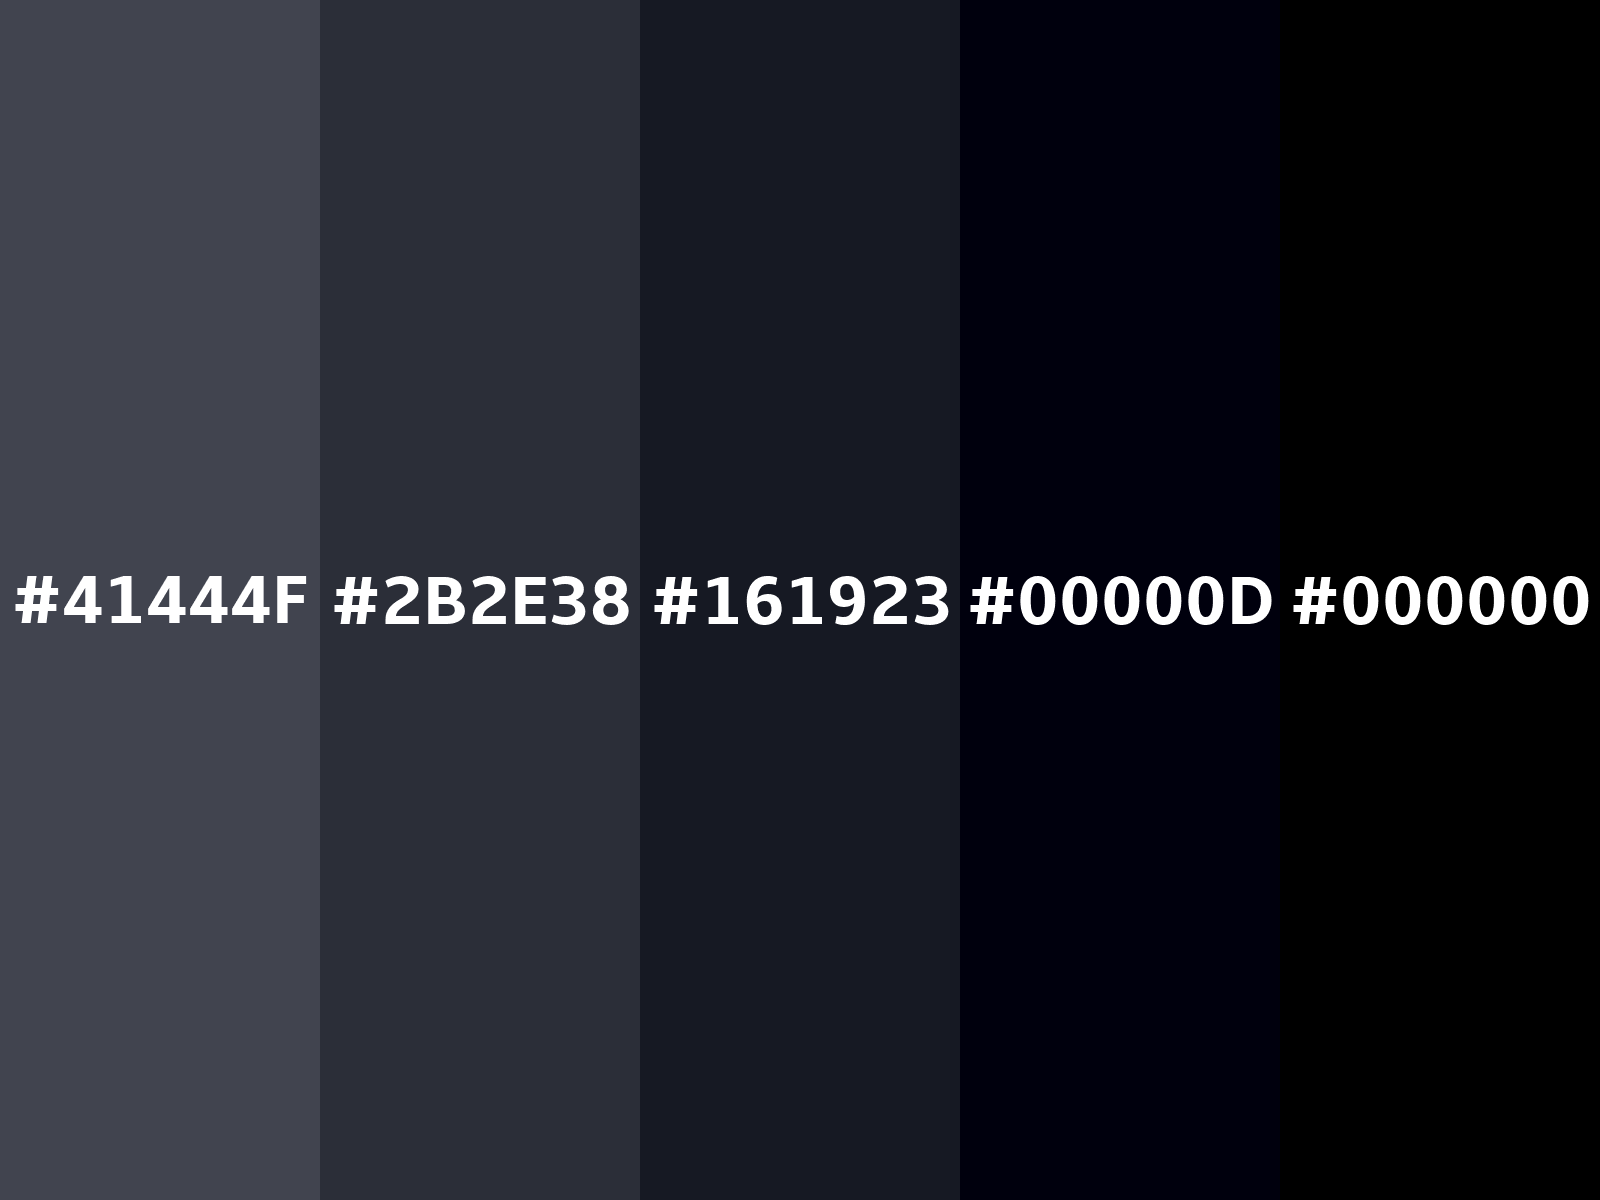 Mã màu Hex: Không biết mã màu Hex là gì? Đừng lo lắng, hãy xem hình ảnh liên quan để khám phá màu sắc đẹp mắt và sử dụng mã màu này để tạo nên các thiết kế độc đáo và ấn tượng.